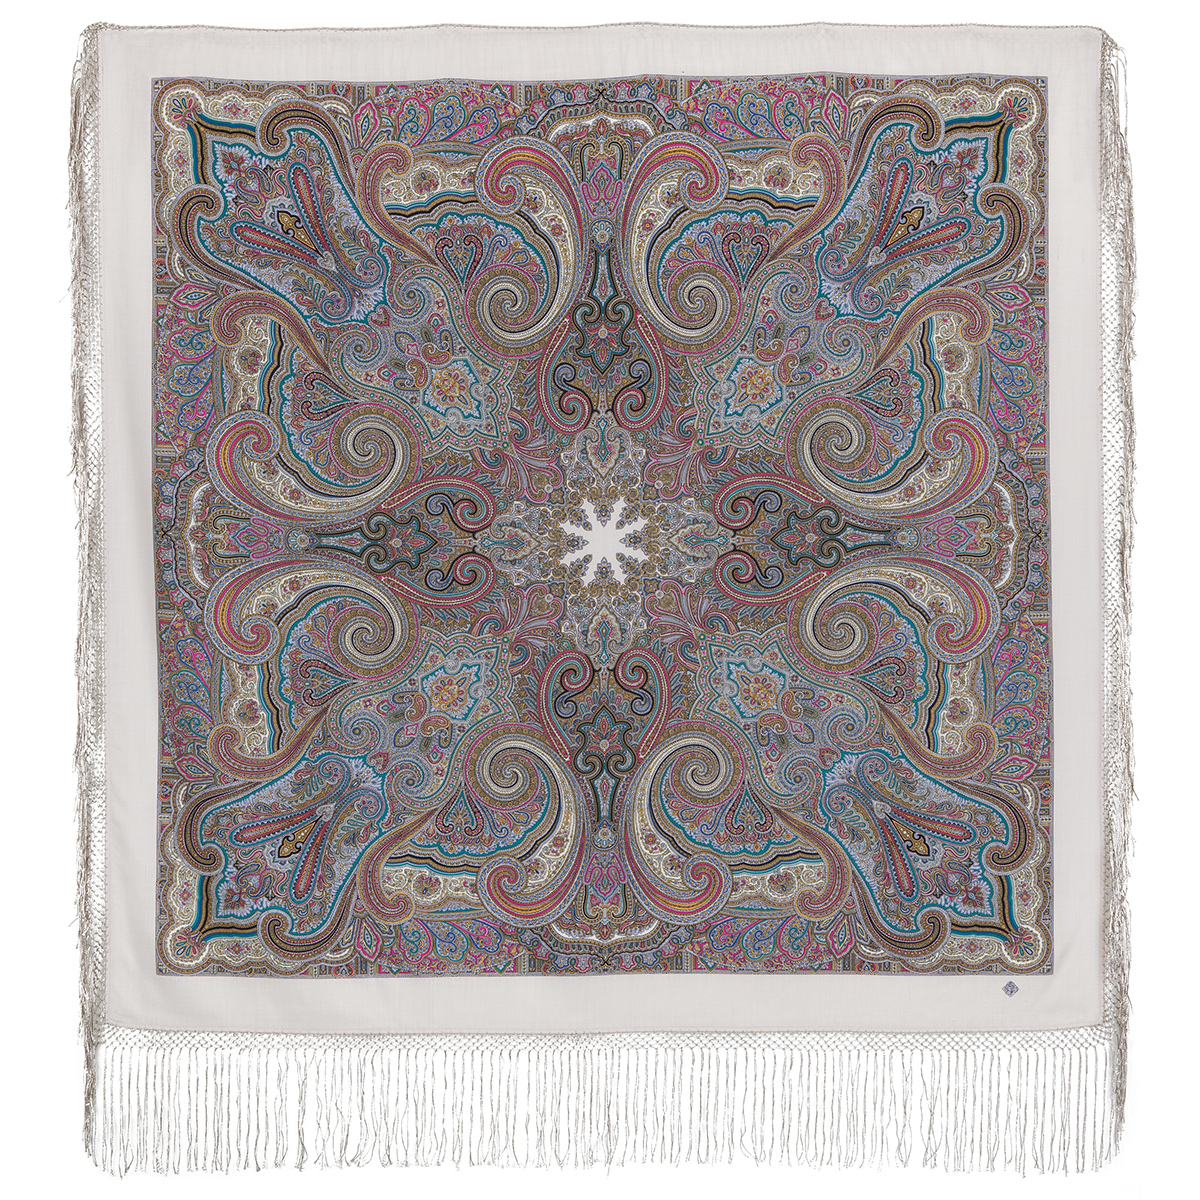 Платок женский Павловопосадский платок 1292 белый/коричневый, 148х148 см